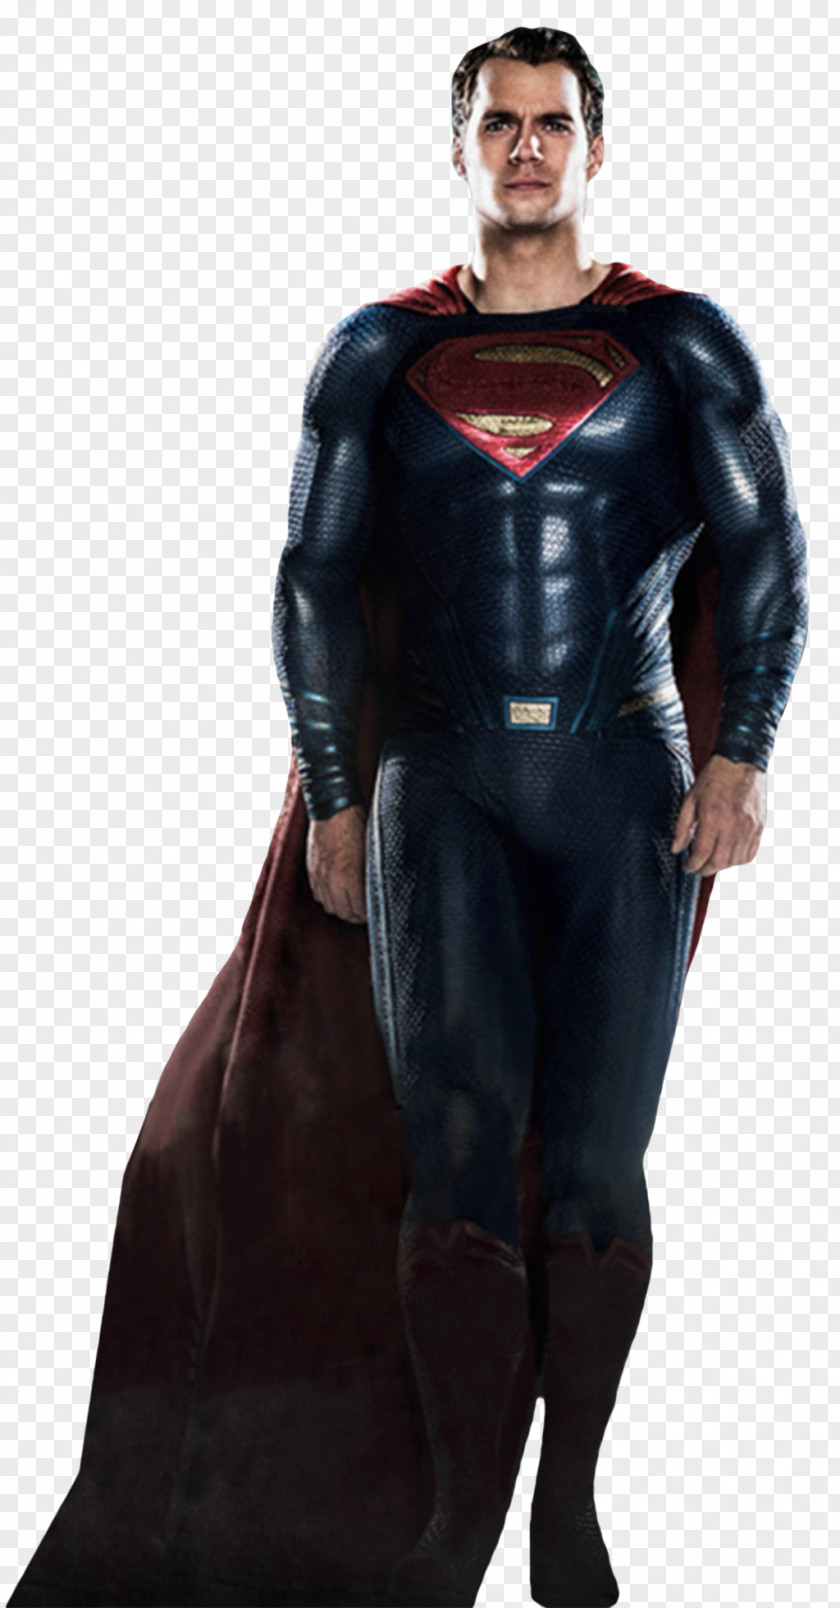 Batman V Superman Ben Affleck Superman: Dawn Of Justice Diana Prince PNG